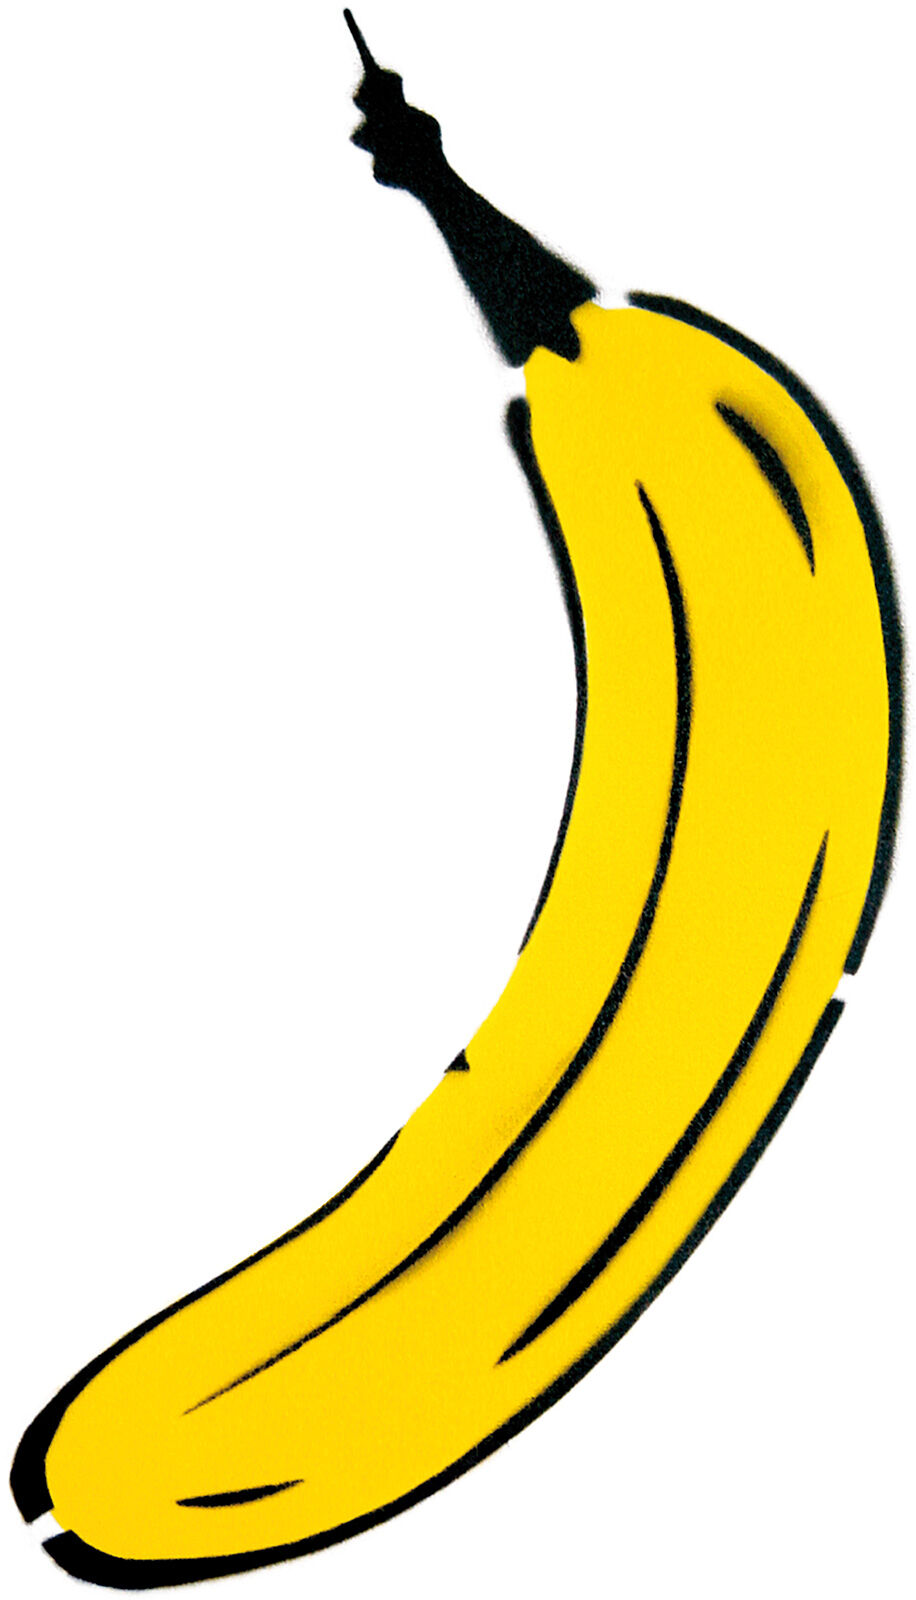 Wandobject "Uitgesneden banaan" von Thomas Baumgärtel